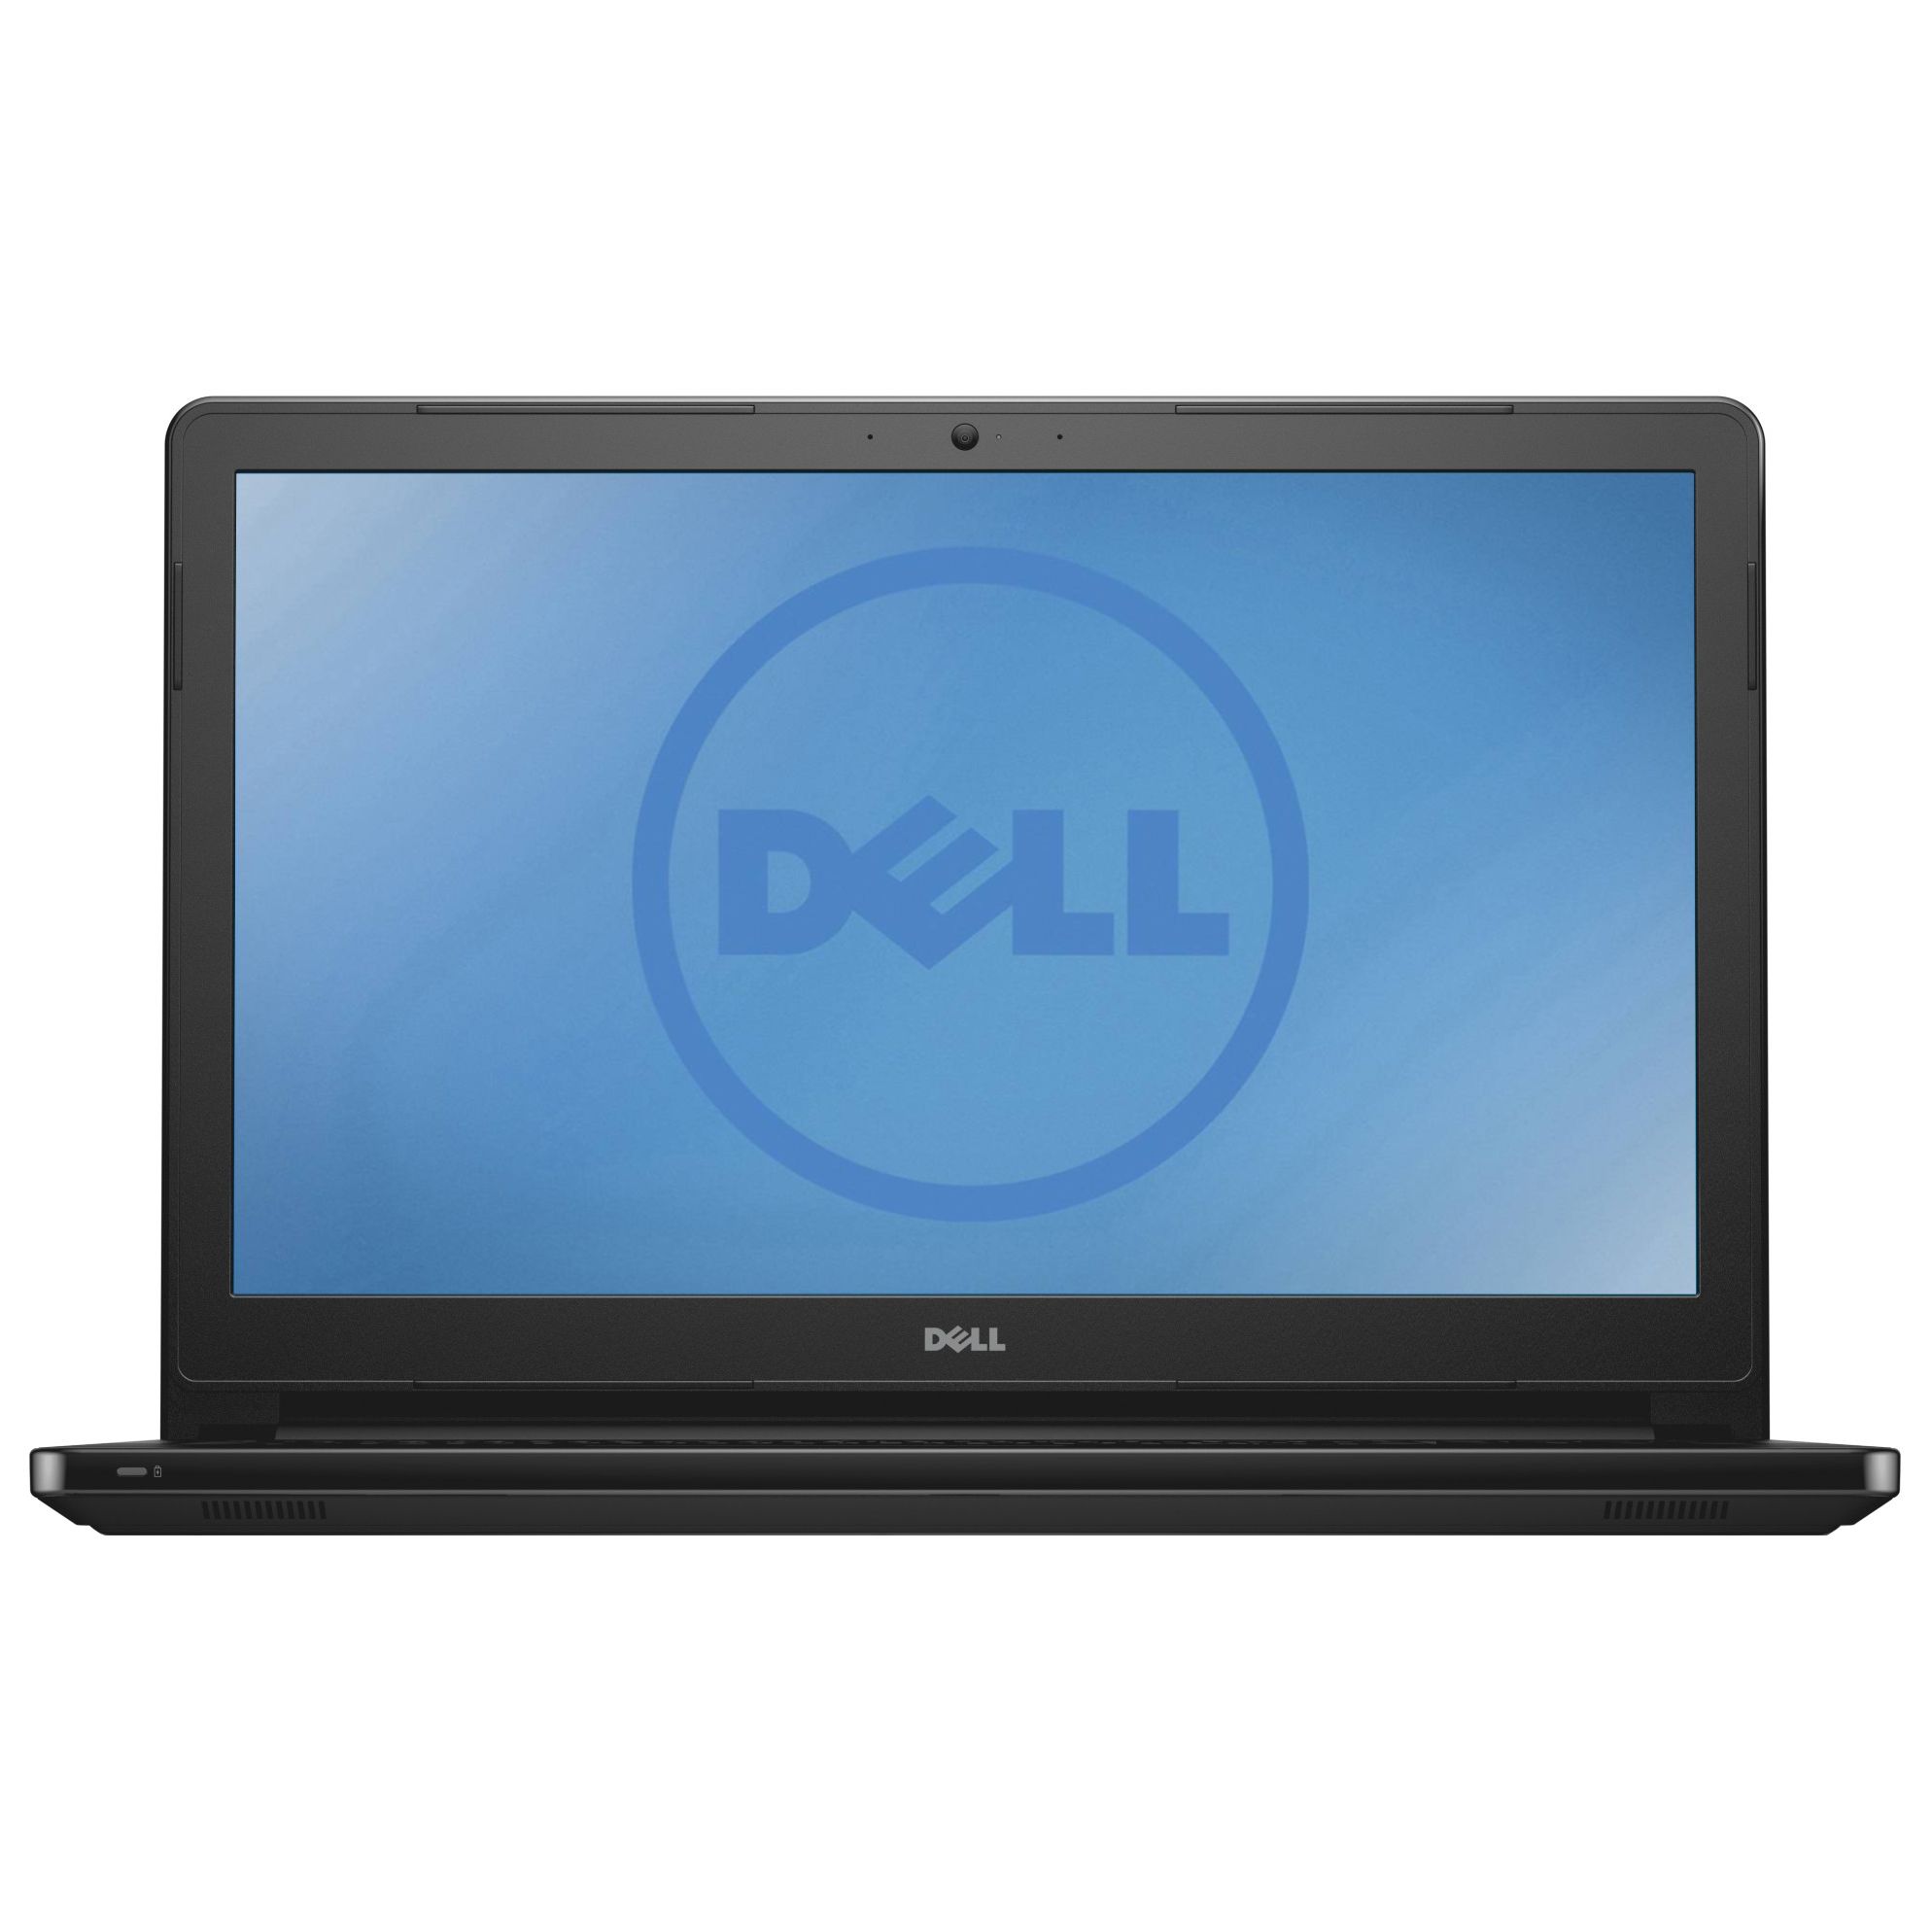  Laptop Dell Inspiron 5555, AMD A8-7410, 4GB DDR3, HDD 500GB, AMD Radeon R5 M335 2GB, Linux 